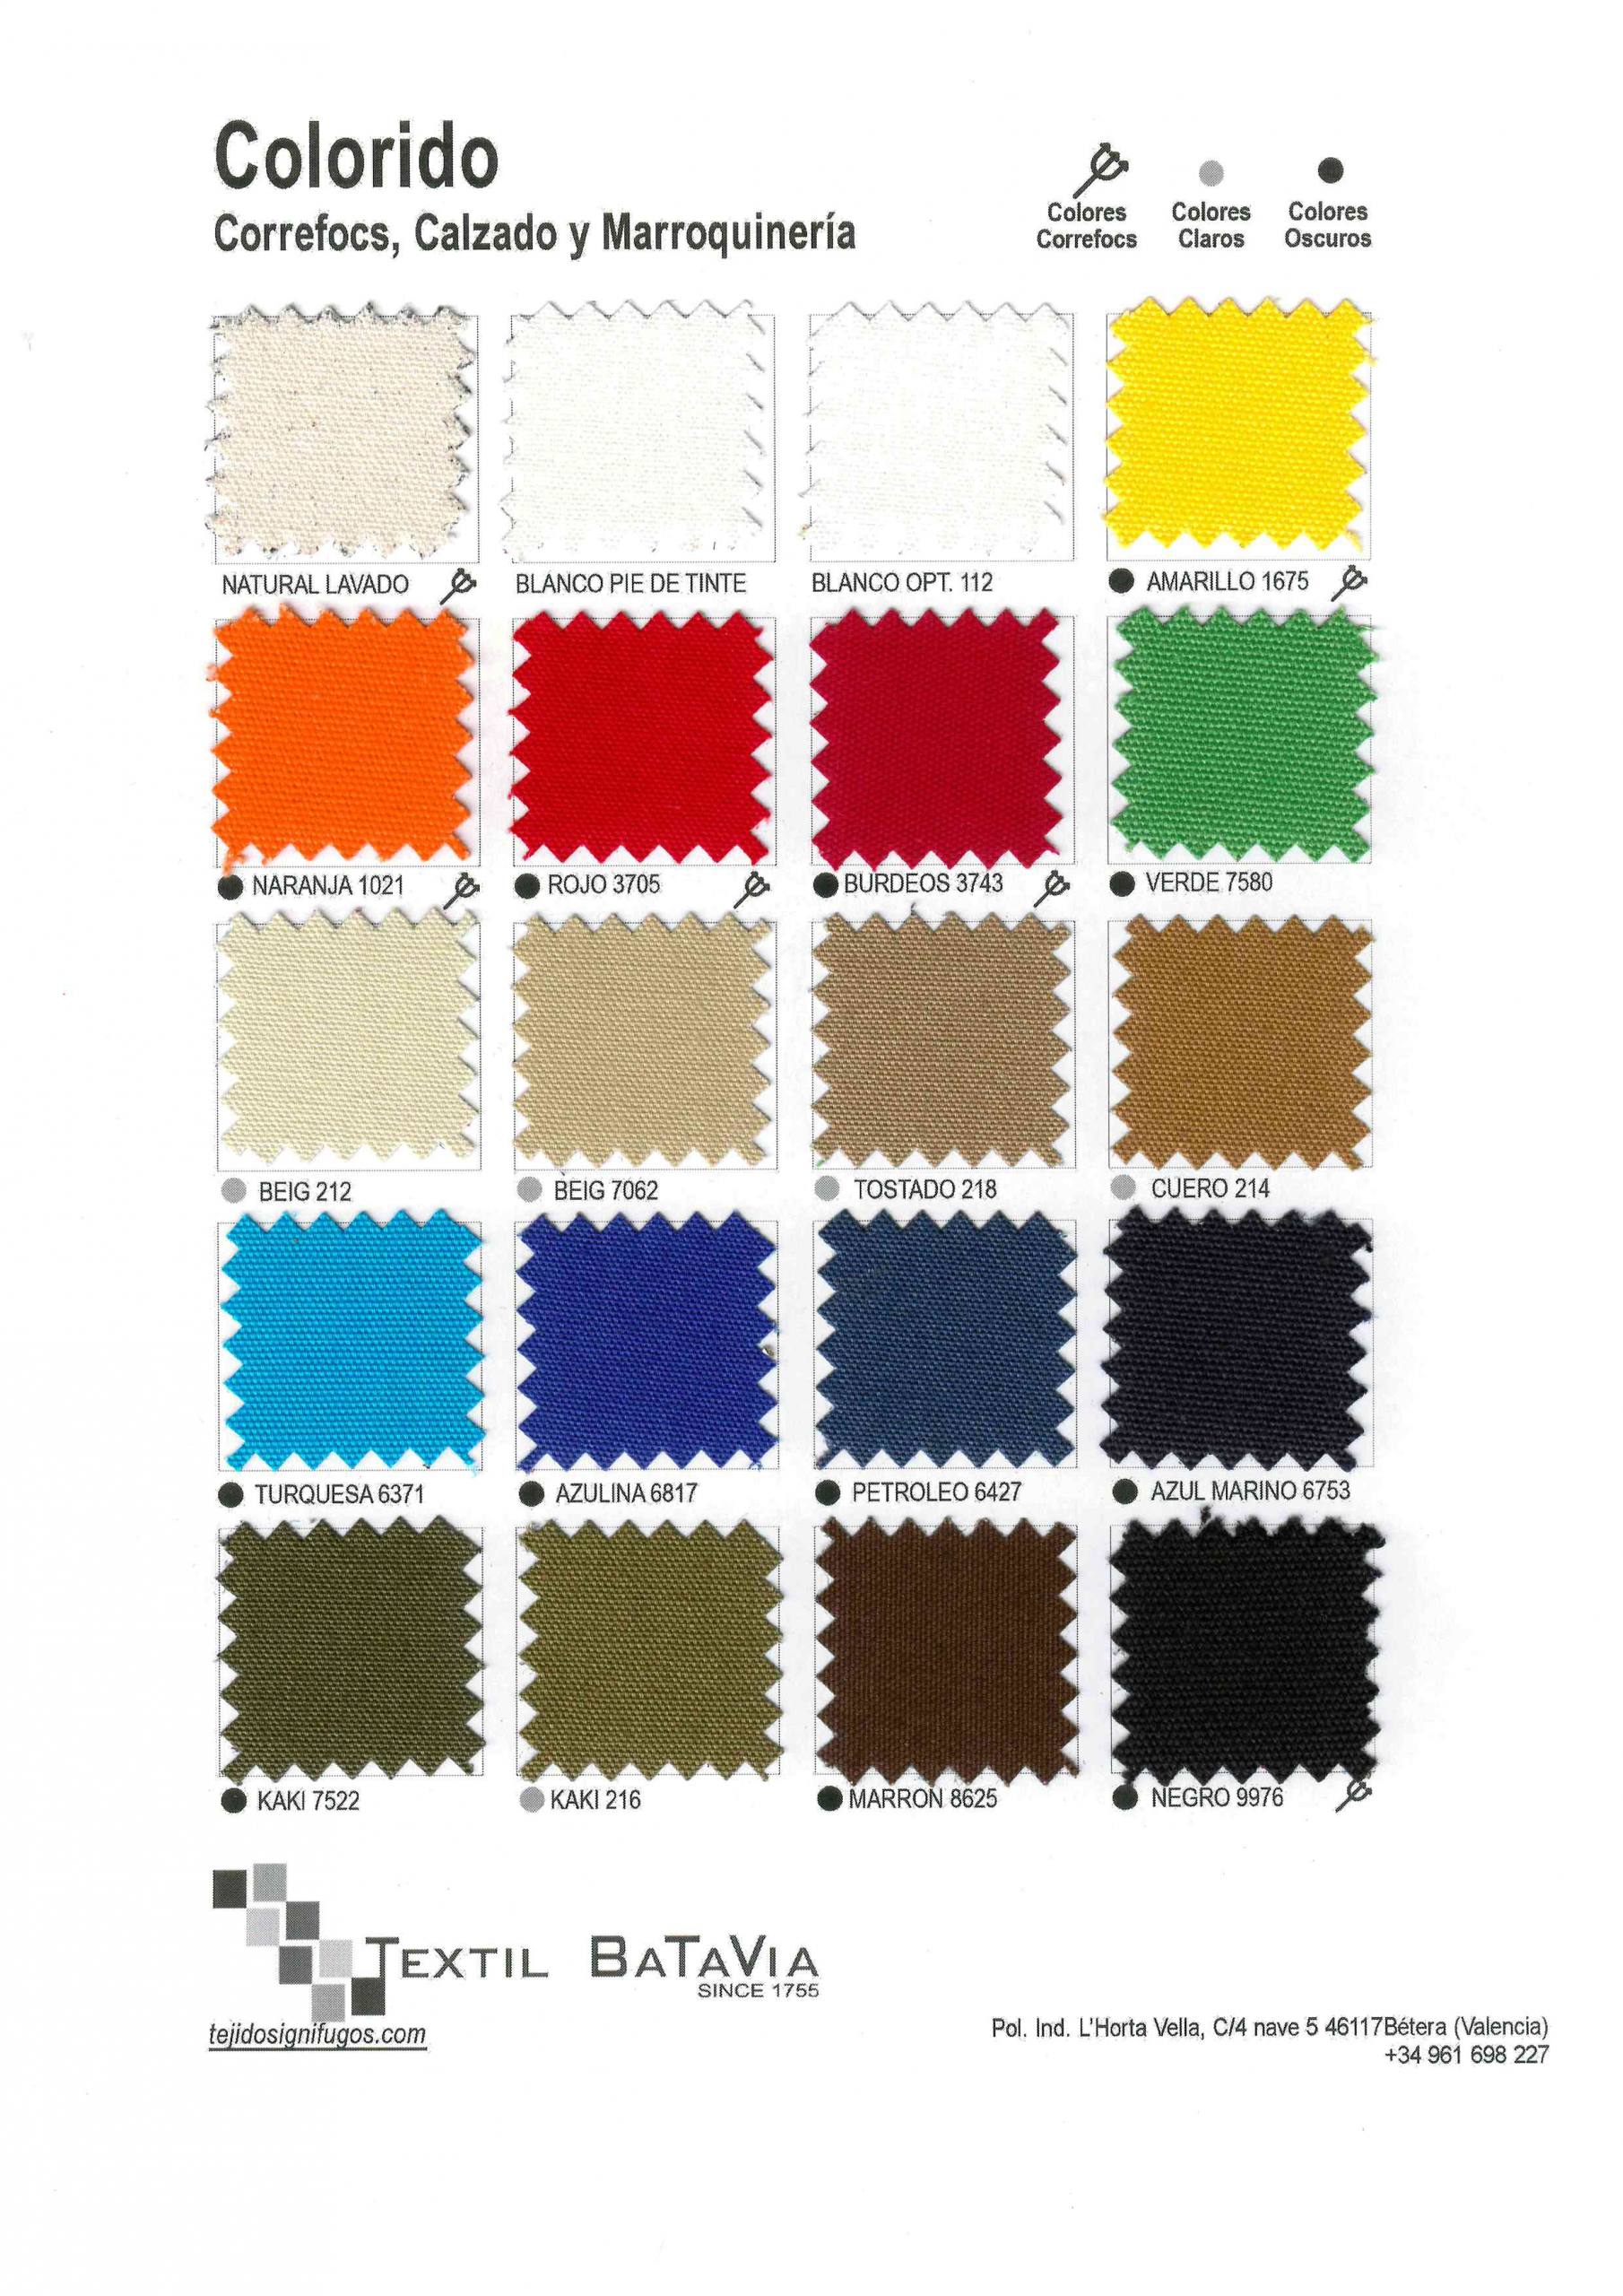 Textil Batavia incorpora a su catálogo Mantas Ignífugas Apagafuegos -  Tejidos Ignífugos